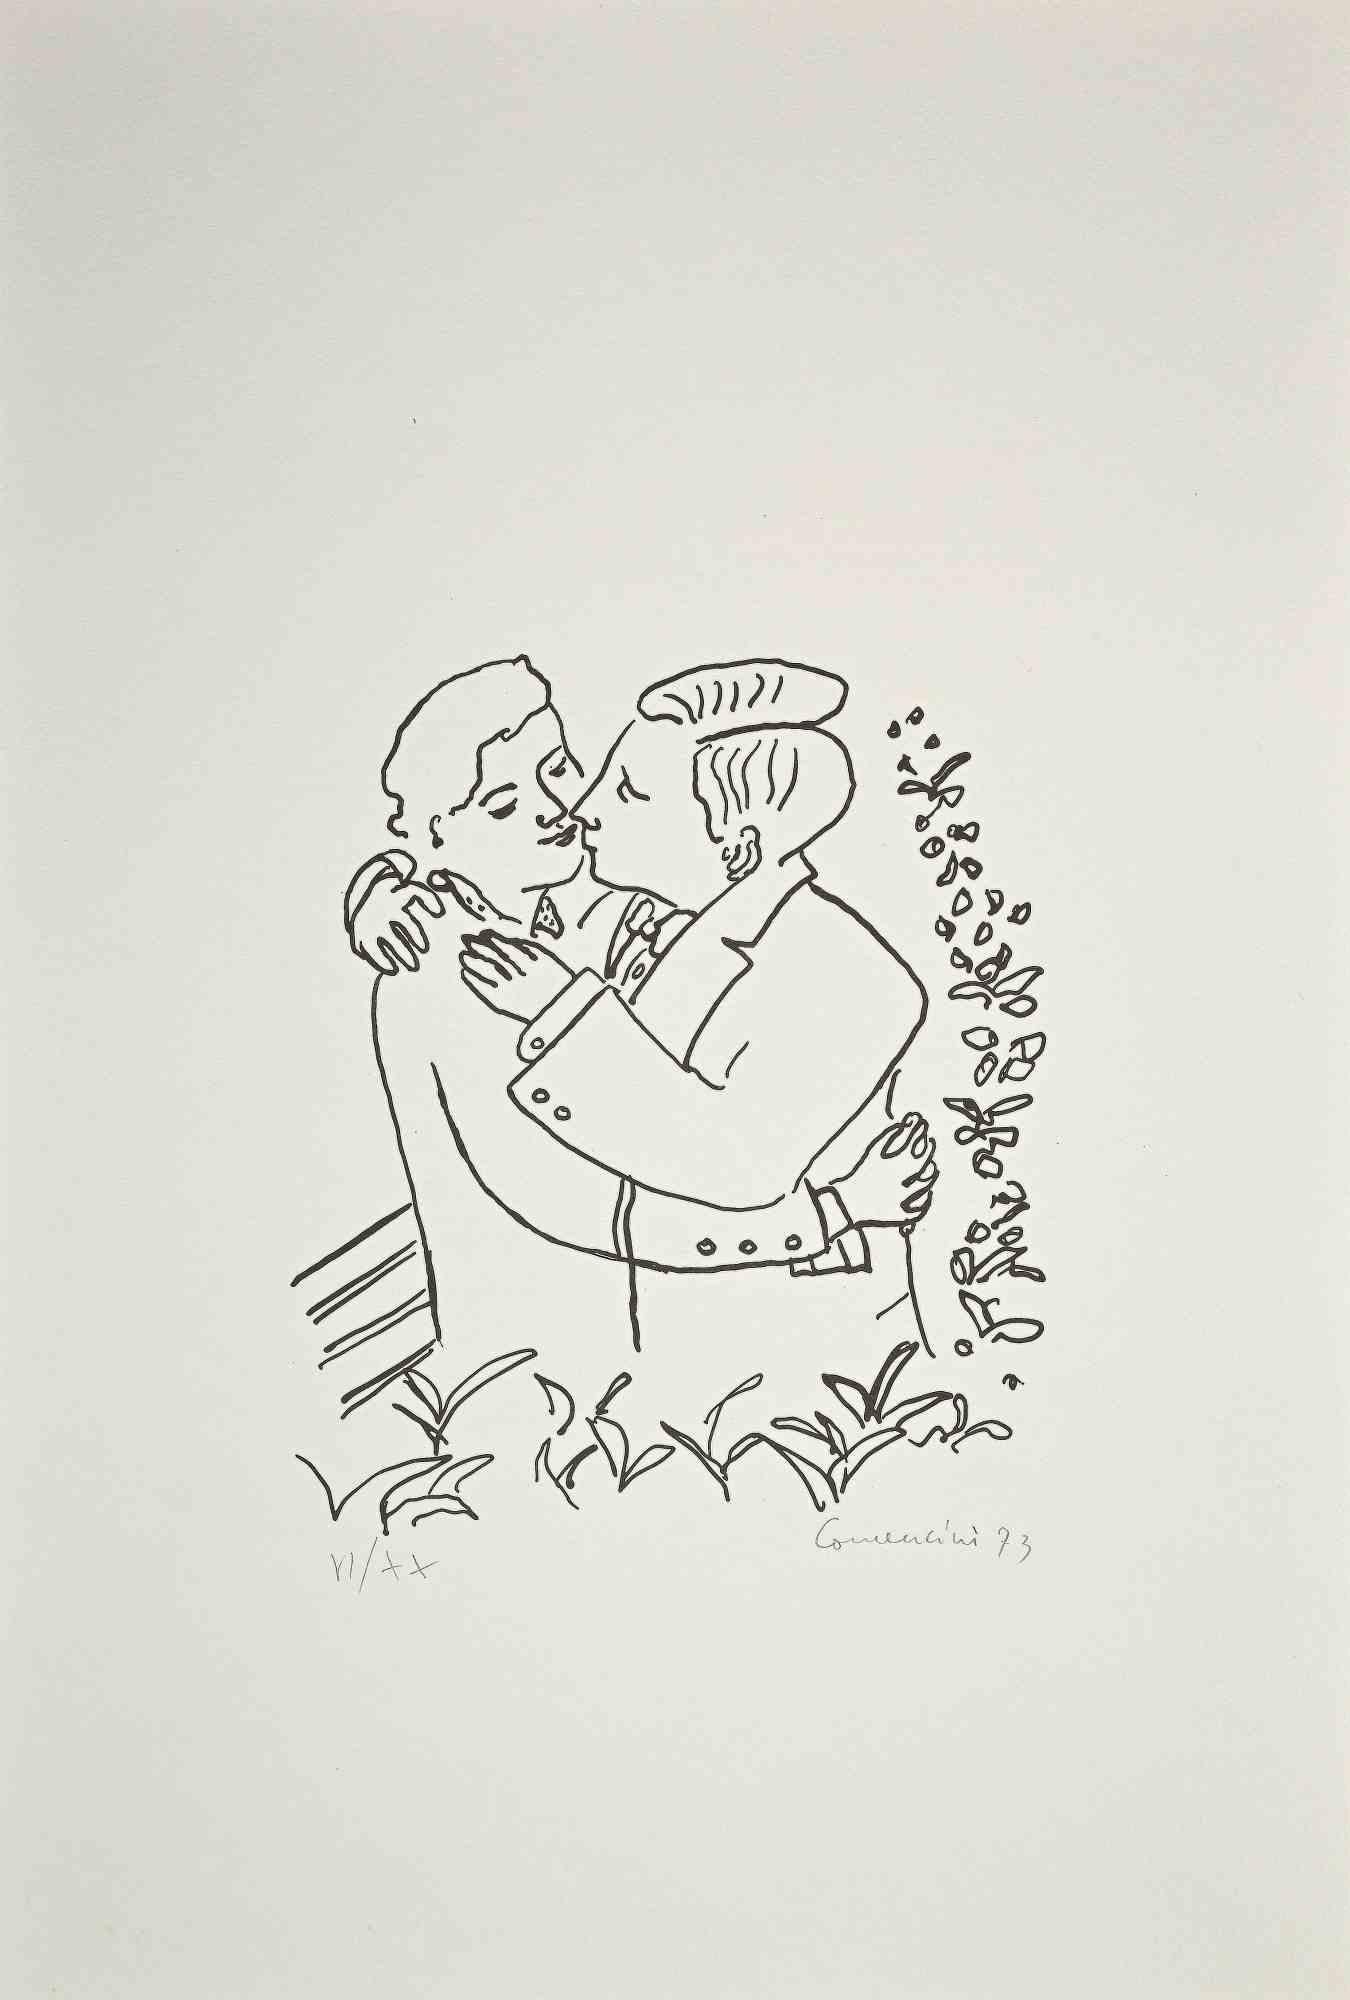 Le Couple est une gravure originale et une pointe sèche sur papier, réalisée par l'artiste italien Eugenio Comencini.

En bon état.

Signé à la main.

Numéroté. Edition, VI/XX.

Cette pièce contemporaine est représentée par des lignes fortes et un